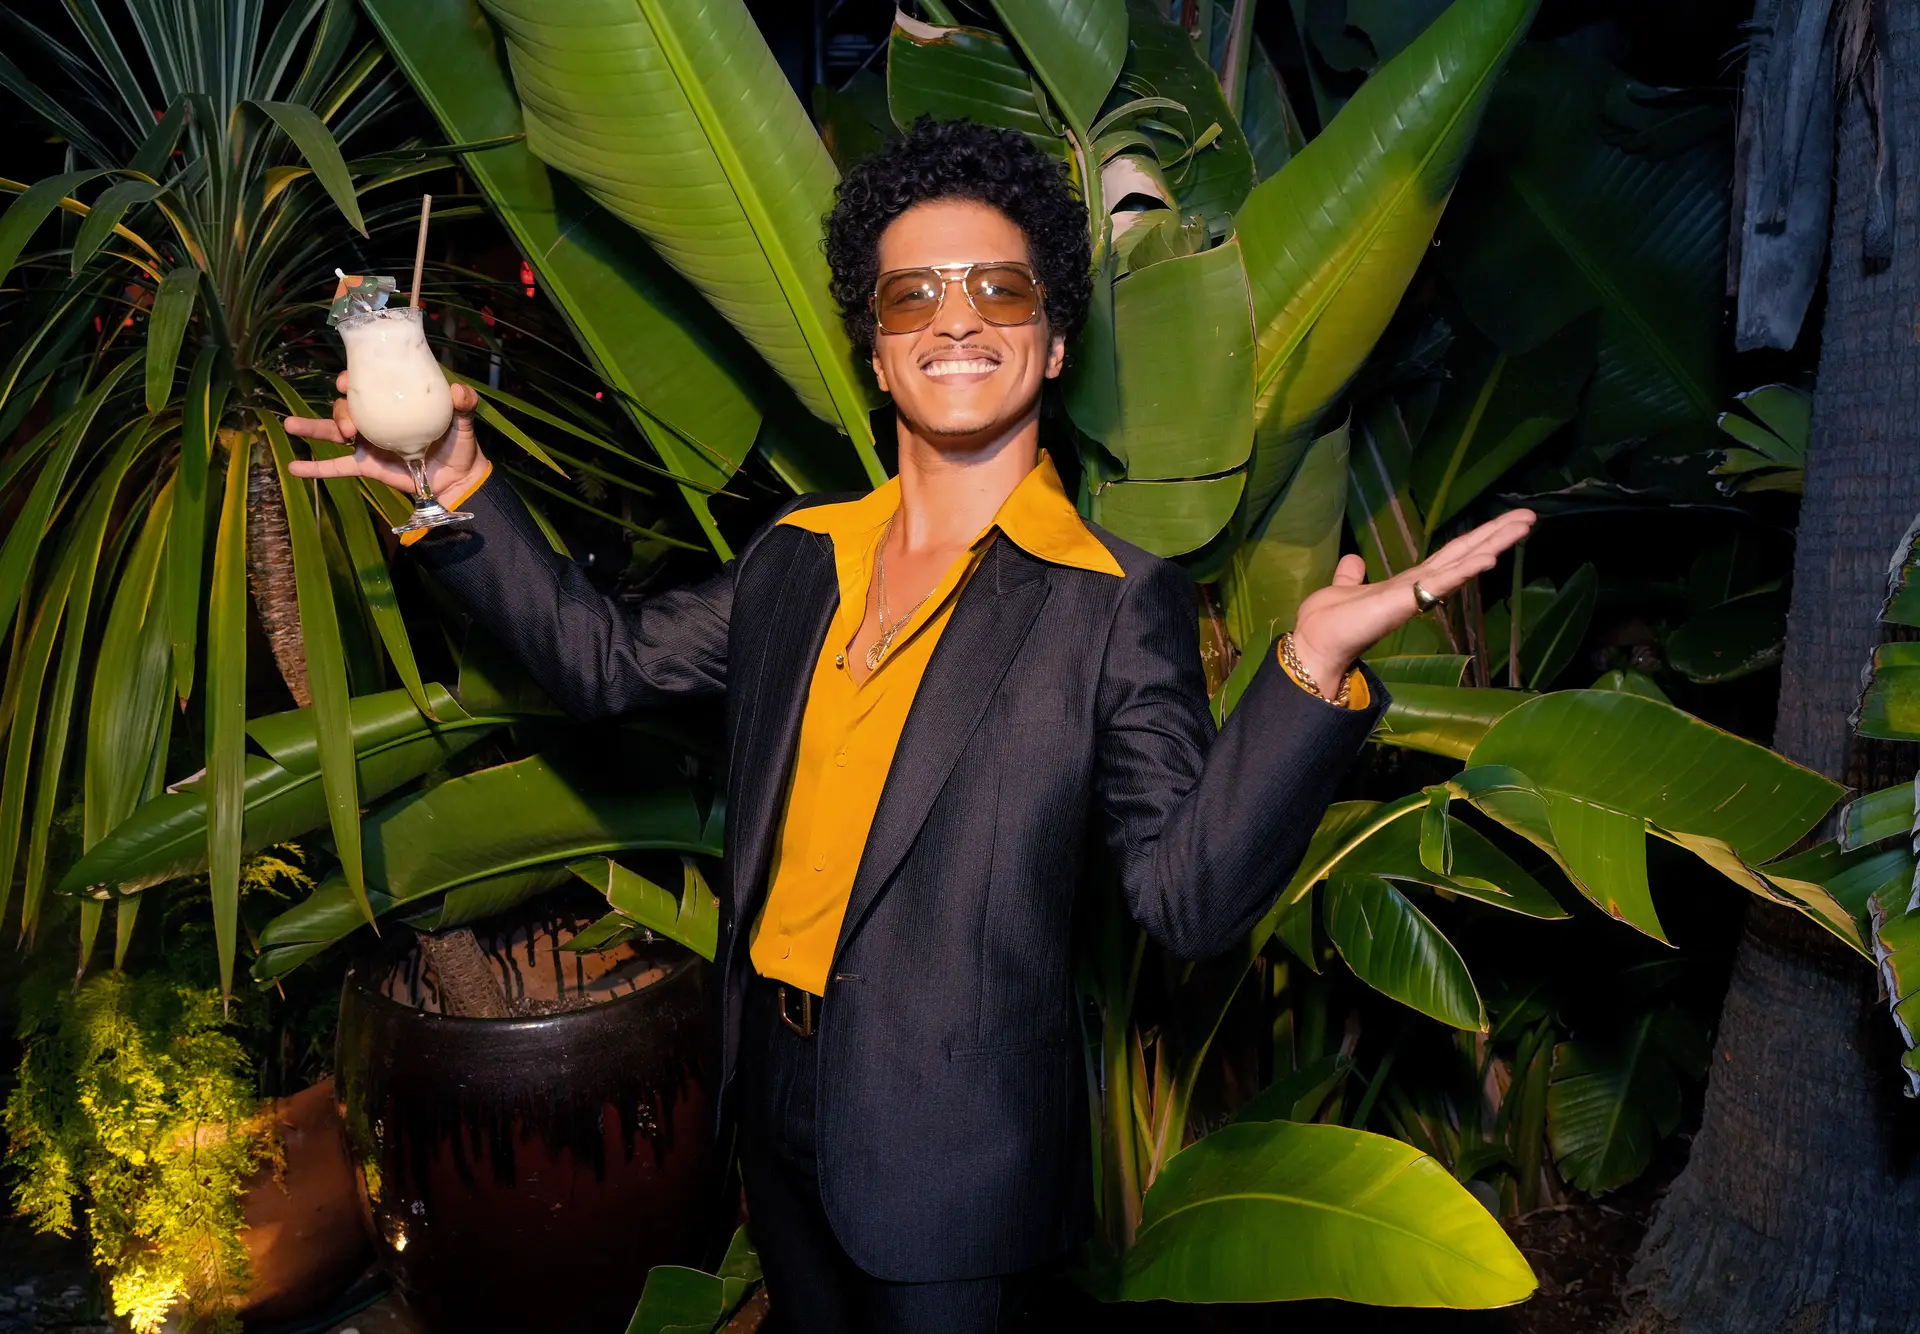 Casino de Las Vegas diz que Bruno Mars não lhe deve dinheiro: “A nossa parceria assenta no respeito mútuo”